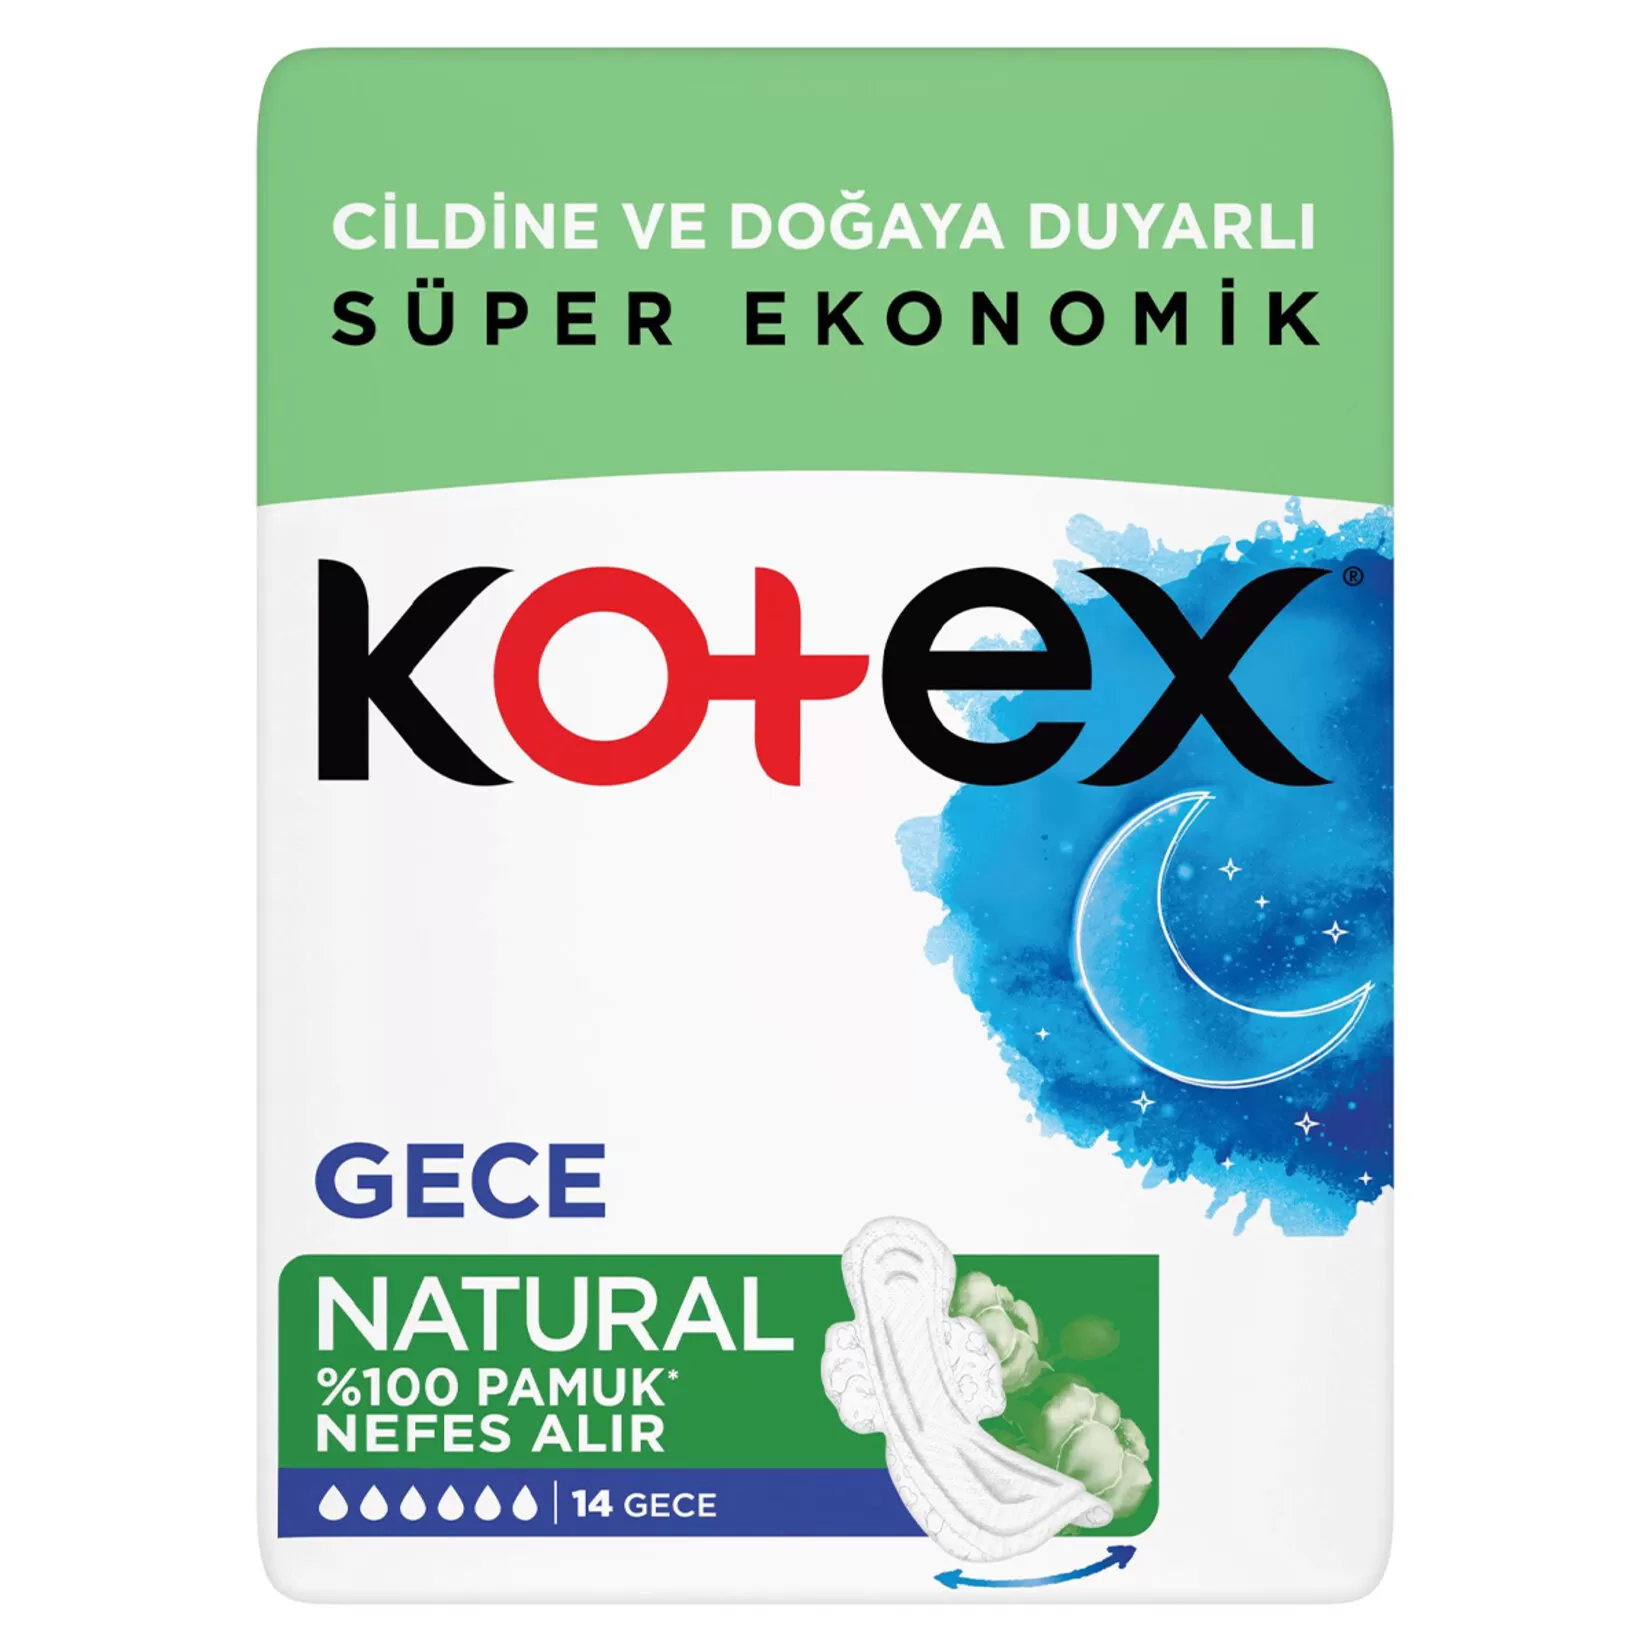 Kotex Natural Ped Gece 14x3 42 Adet